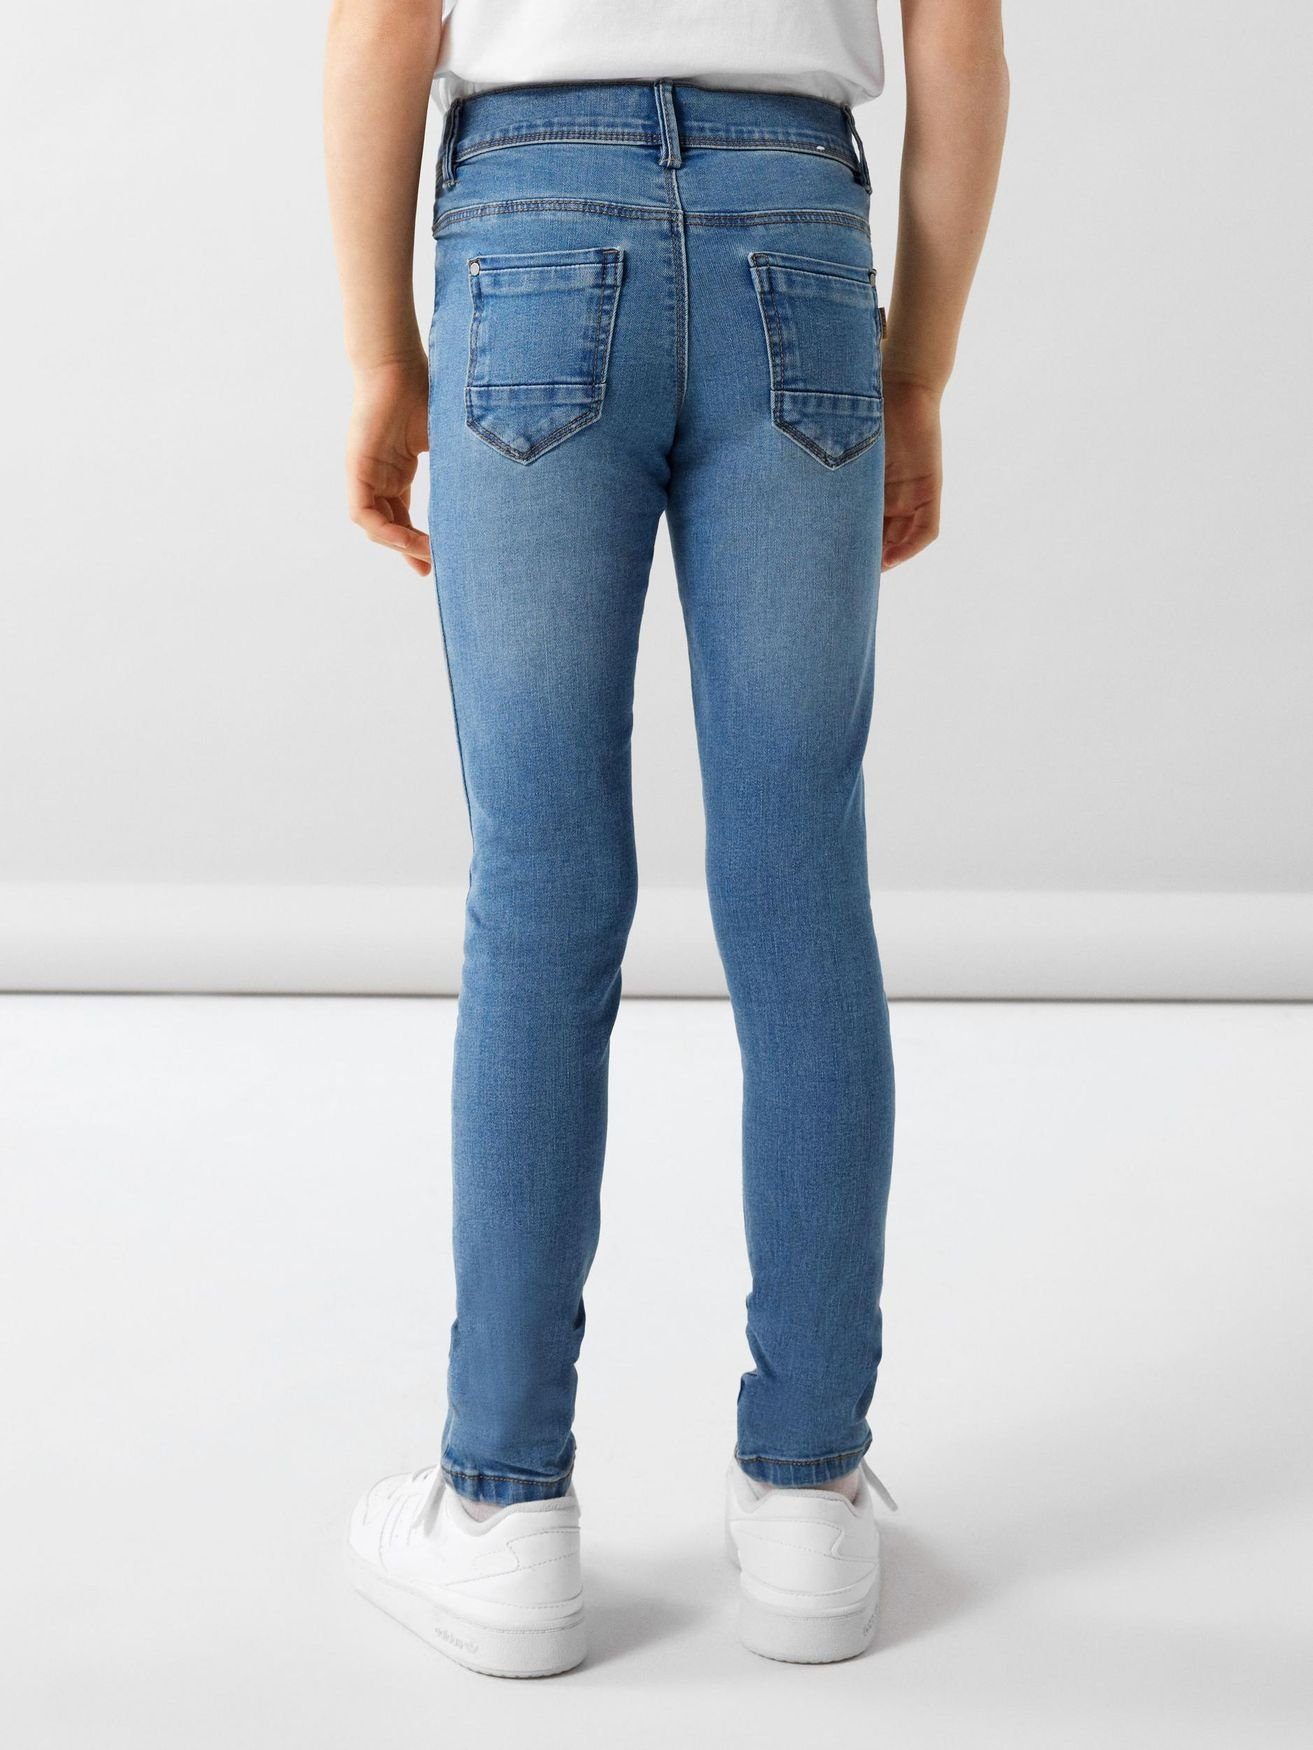 5546 Hose NKFPOLLY in Name Regular-fit-Jeans Skinny Hellblau Denim Jeans It